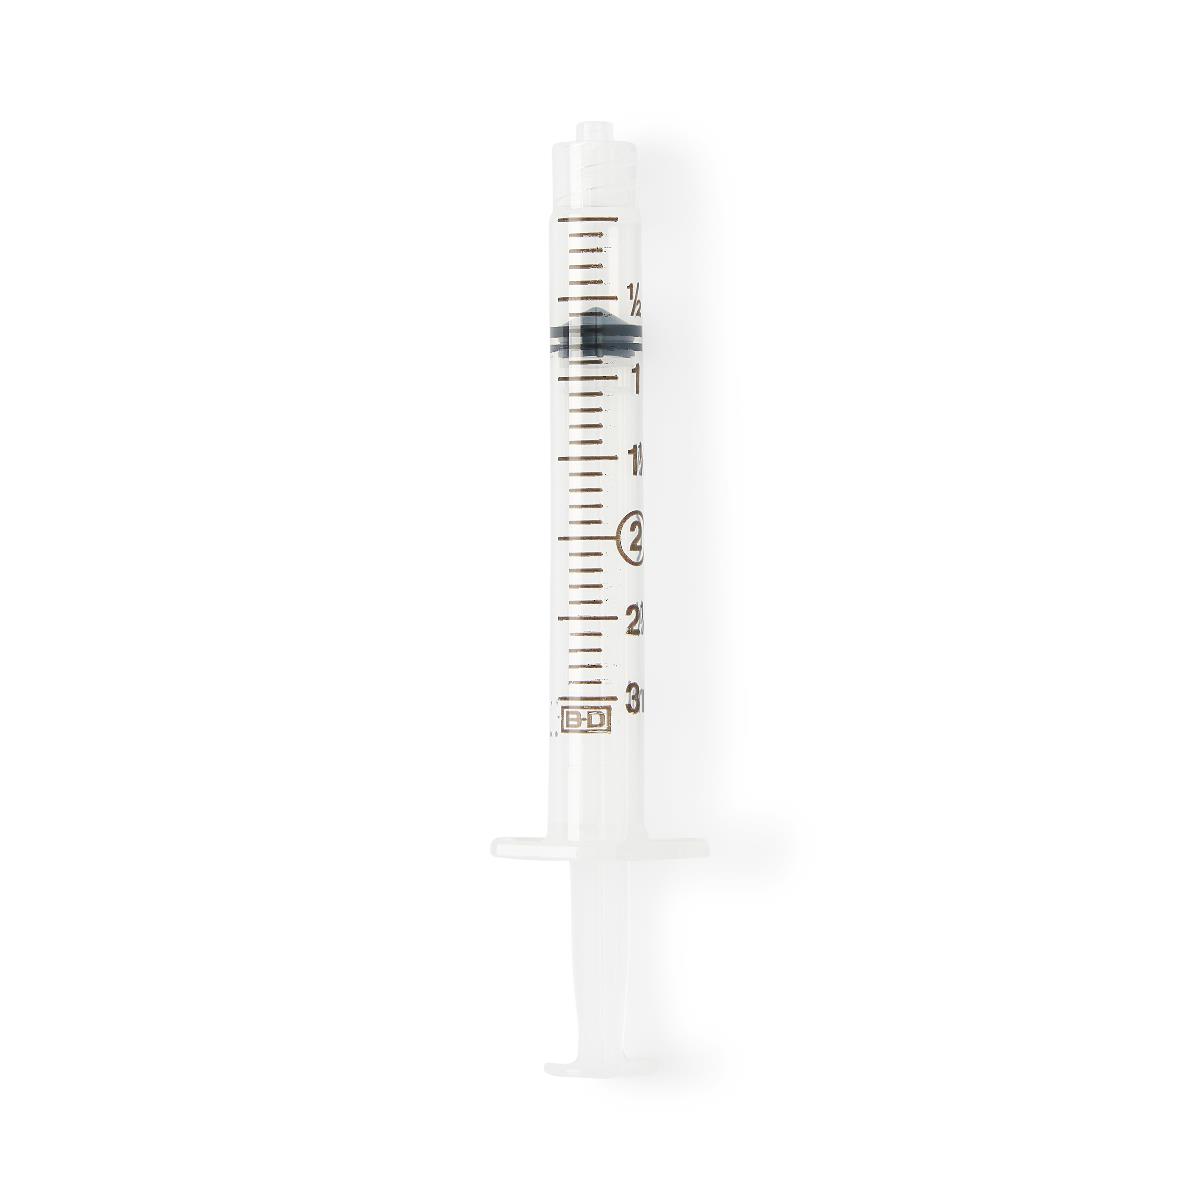 Sterile Luer-Lok Tip Syringes | Medline Industries, Inc.